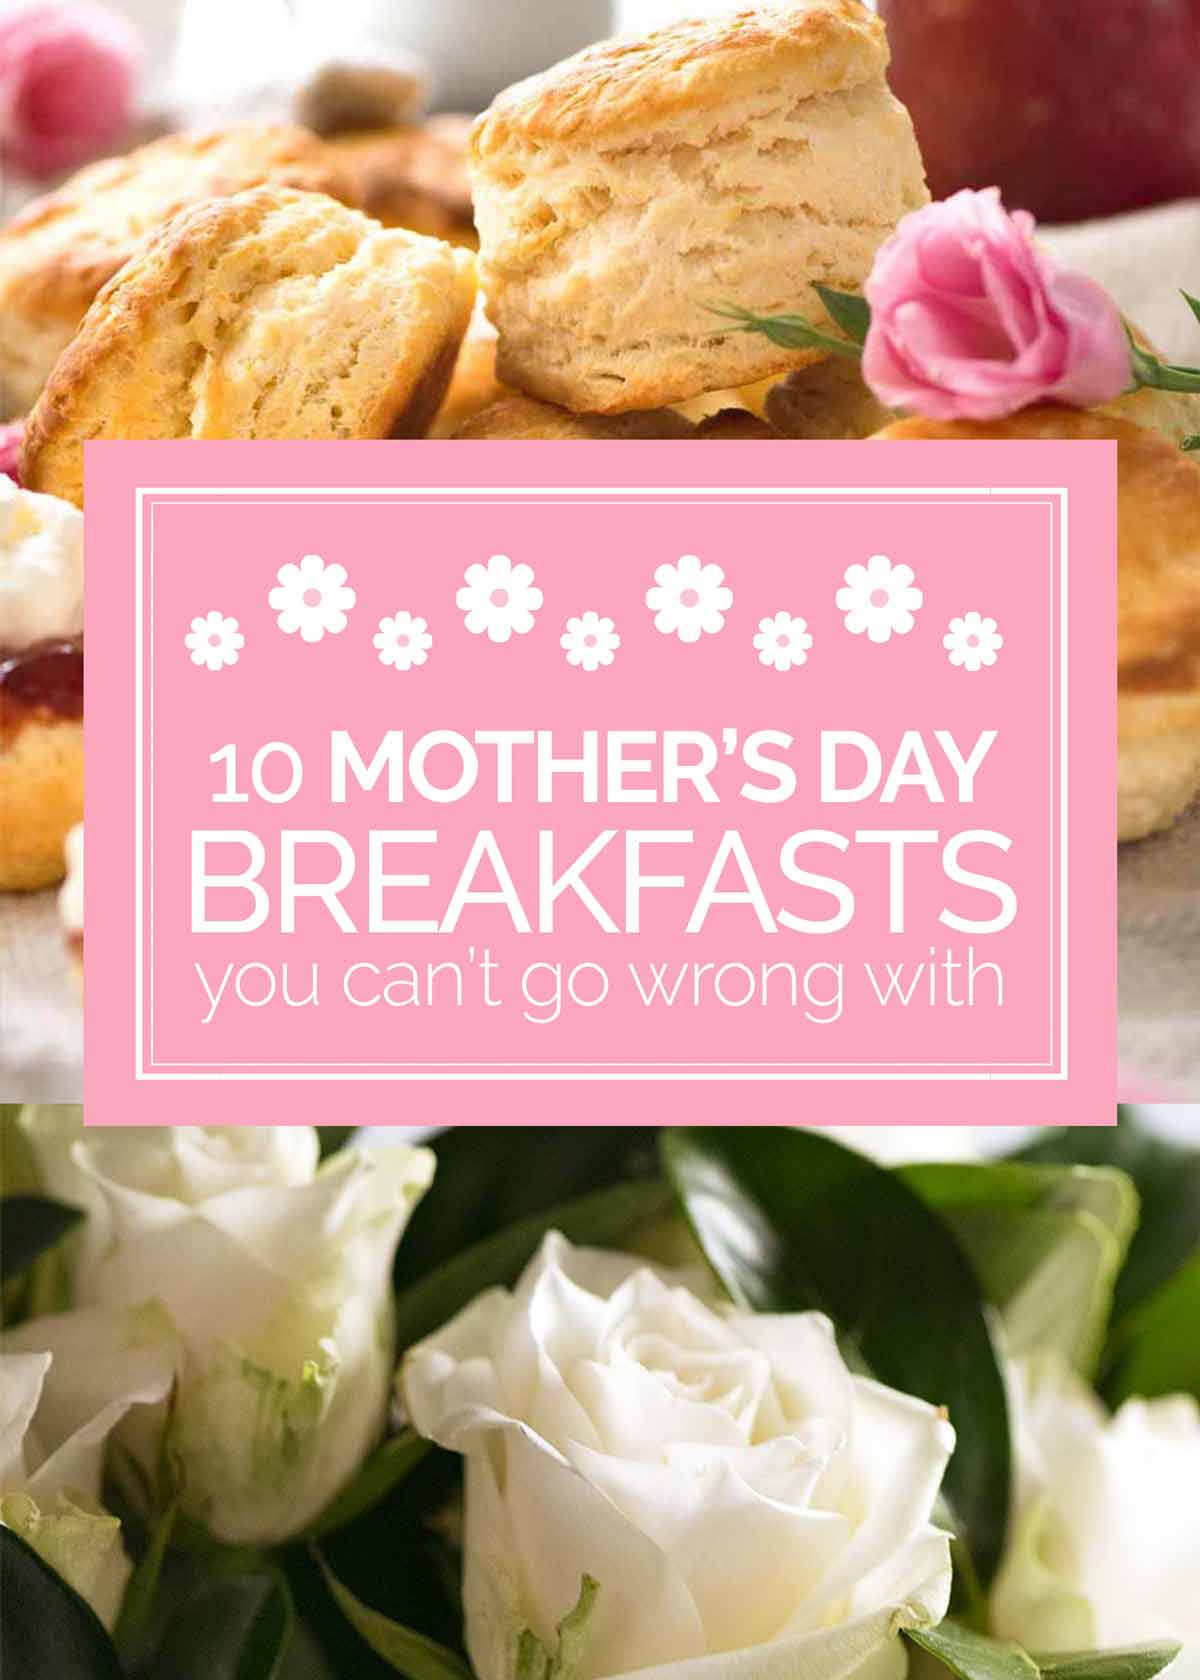 Mother's Day breakfast ideas